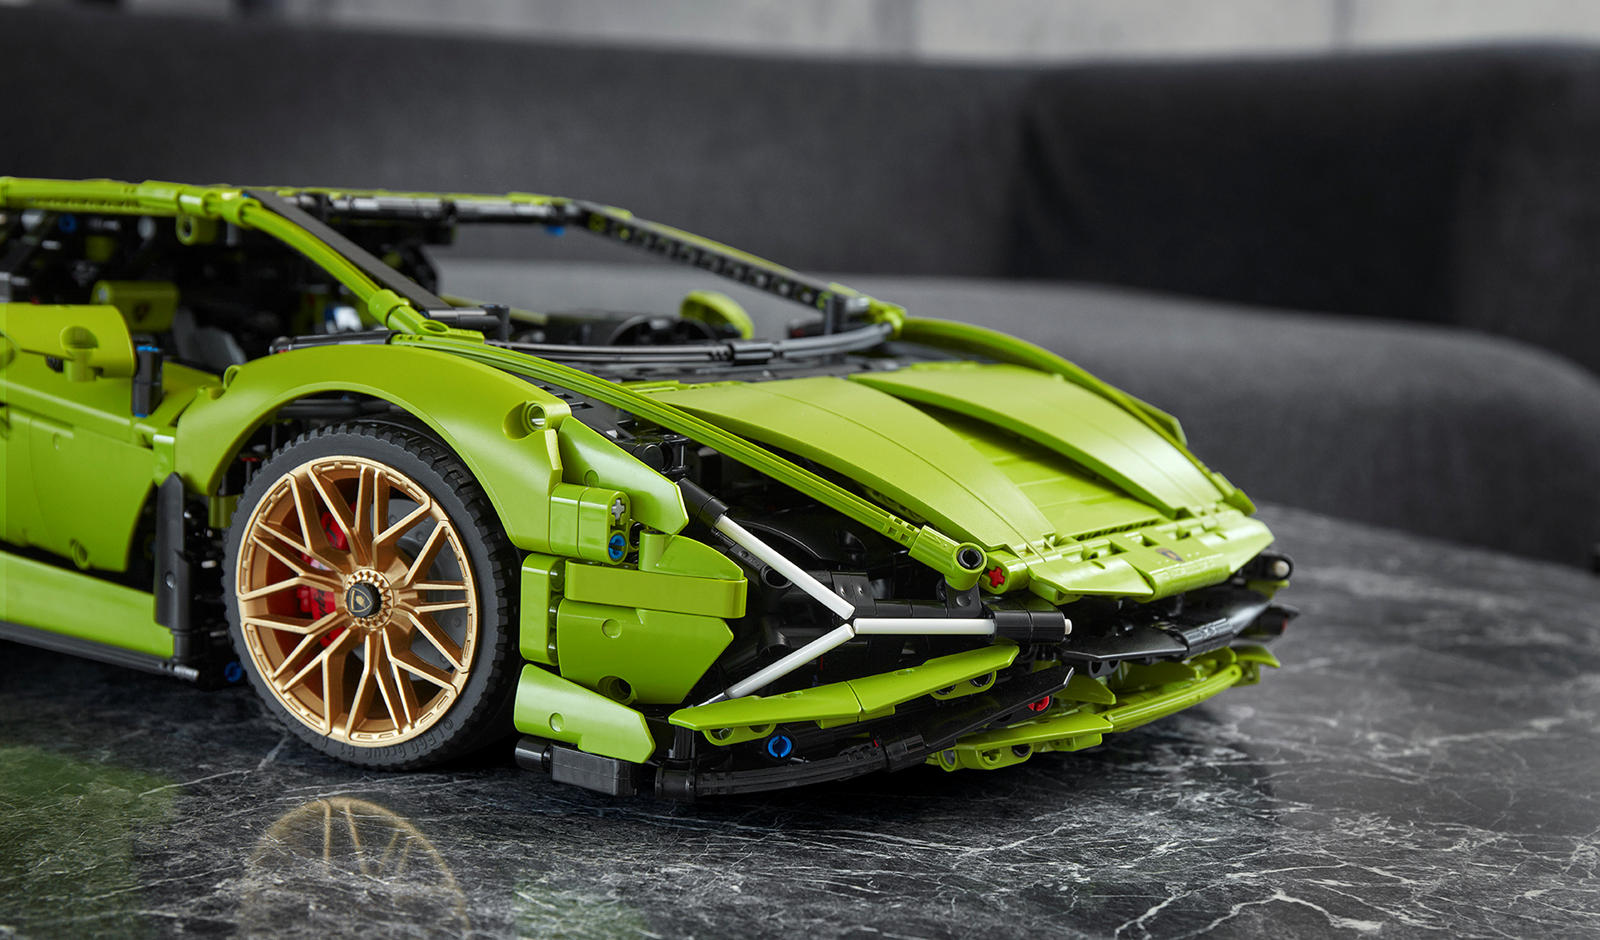 «Каждый супер-спортивный автомобиль Lamborghini может быть уникальным благодаря нашей программе персонализации Ad Personam и особому стилю вождения каждого владельца, так же как кирпичики LEGO предоставляют строителям всех возрастов бесконечные возмо